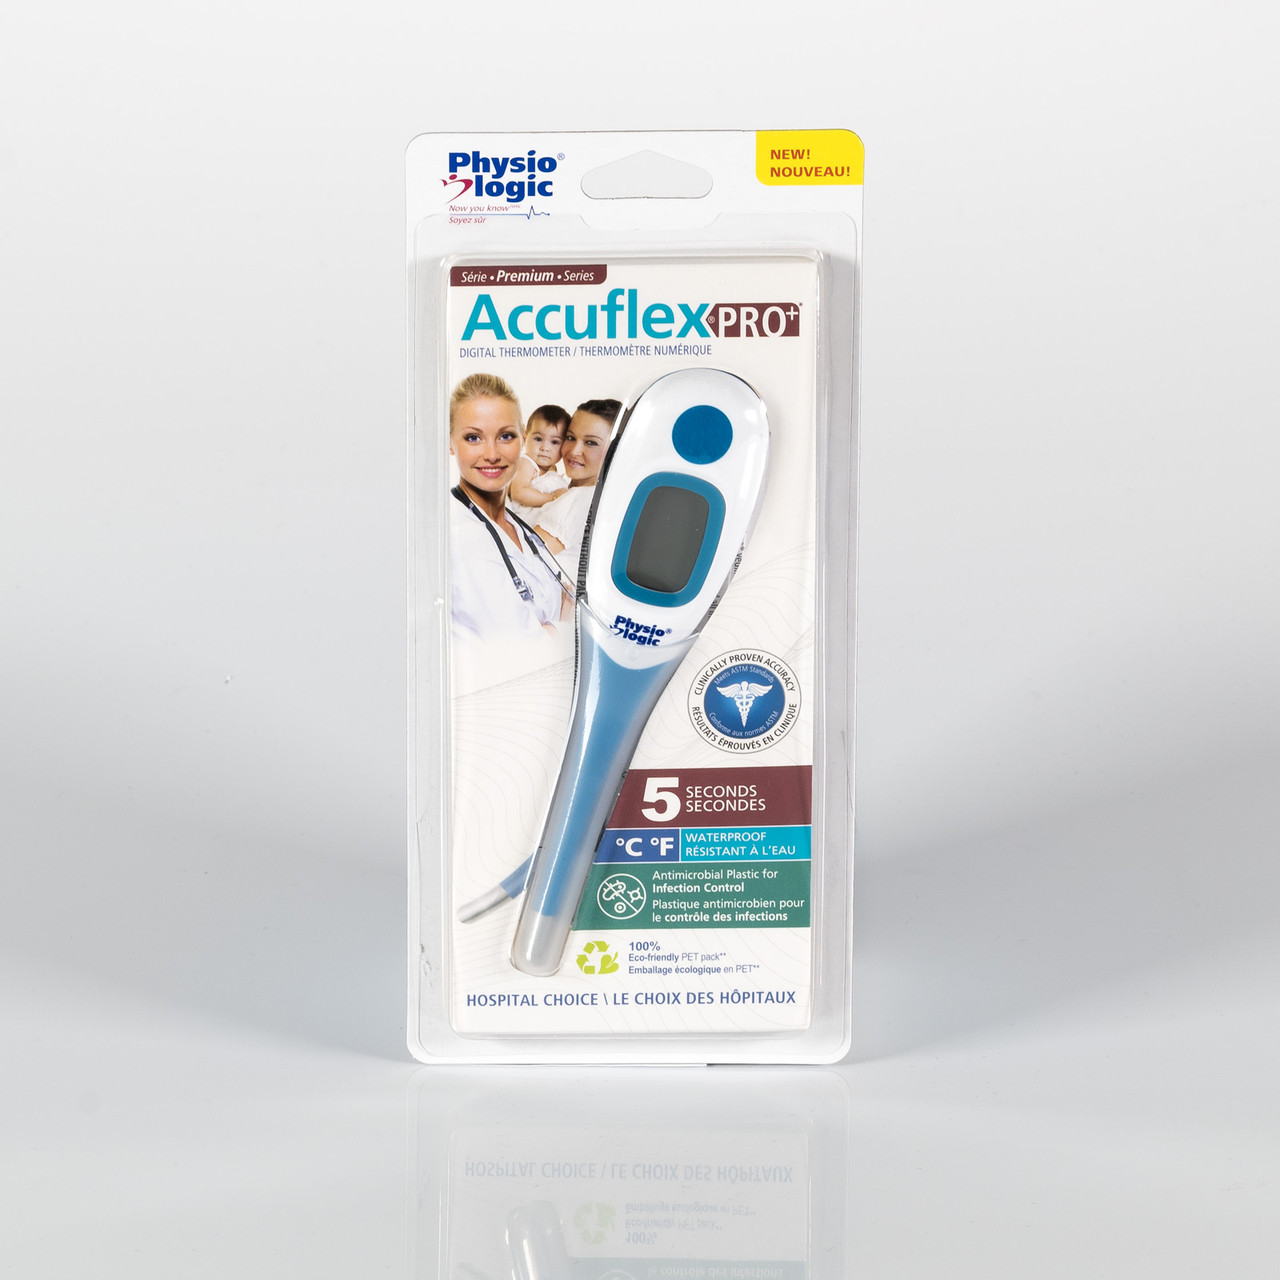 Physio Logic® PhysioLogic AccuflexPro+ Thermomètre numérique 5 secondes  avec embout flexible